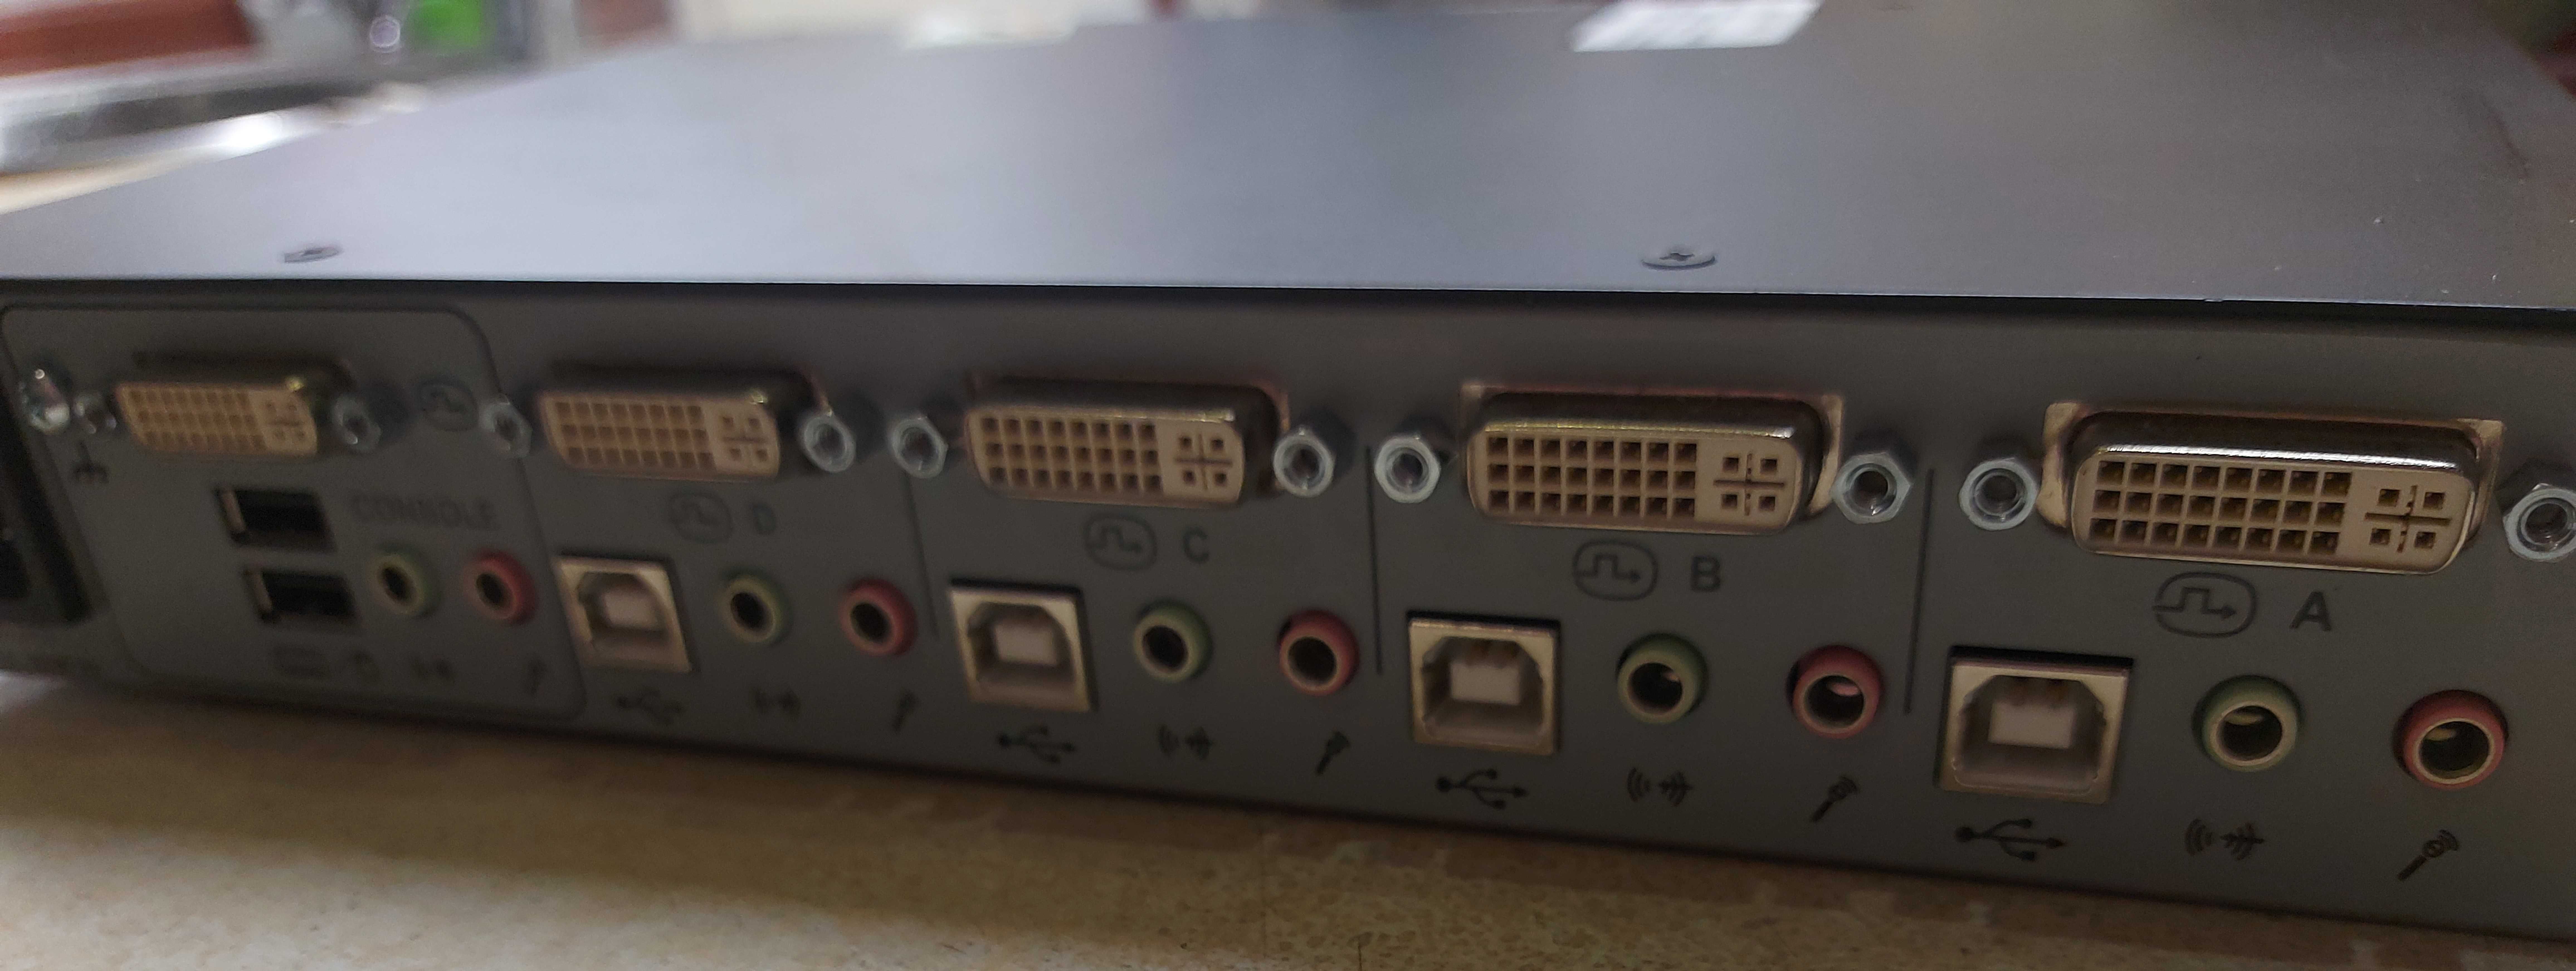 KVM DVI switch SC640 макс разрешение видео 2560x1600  60Hz